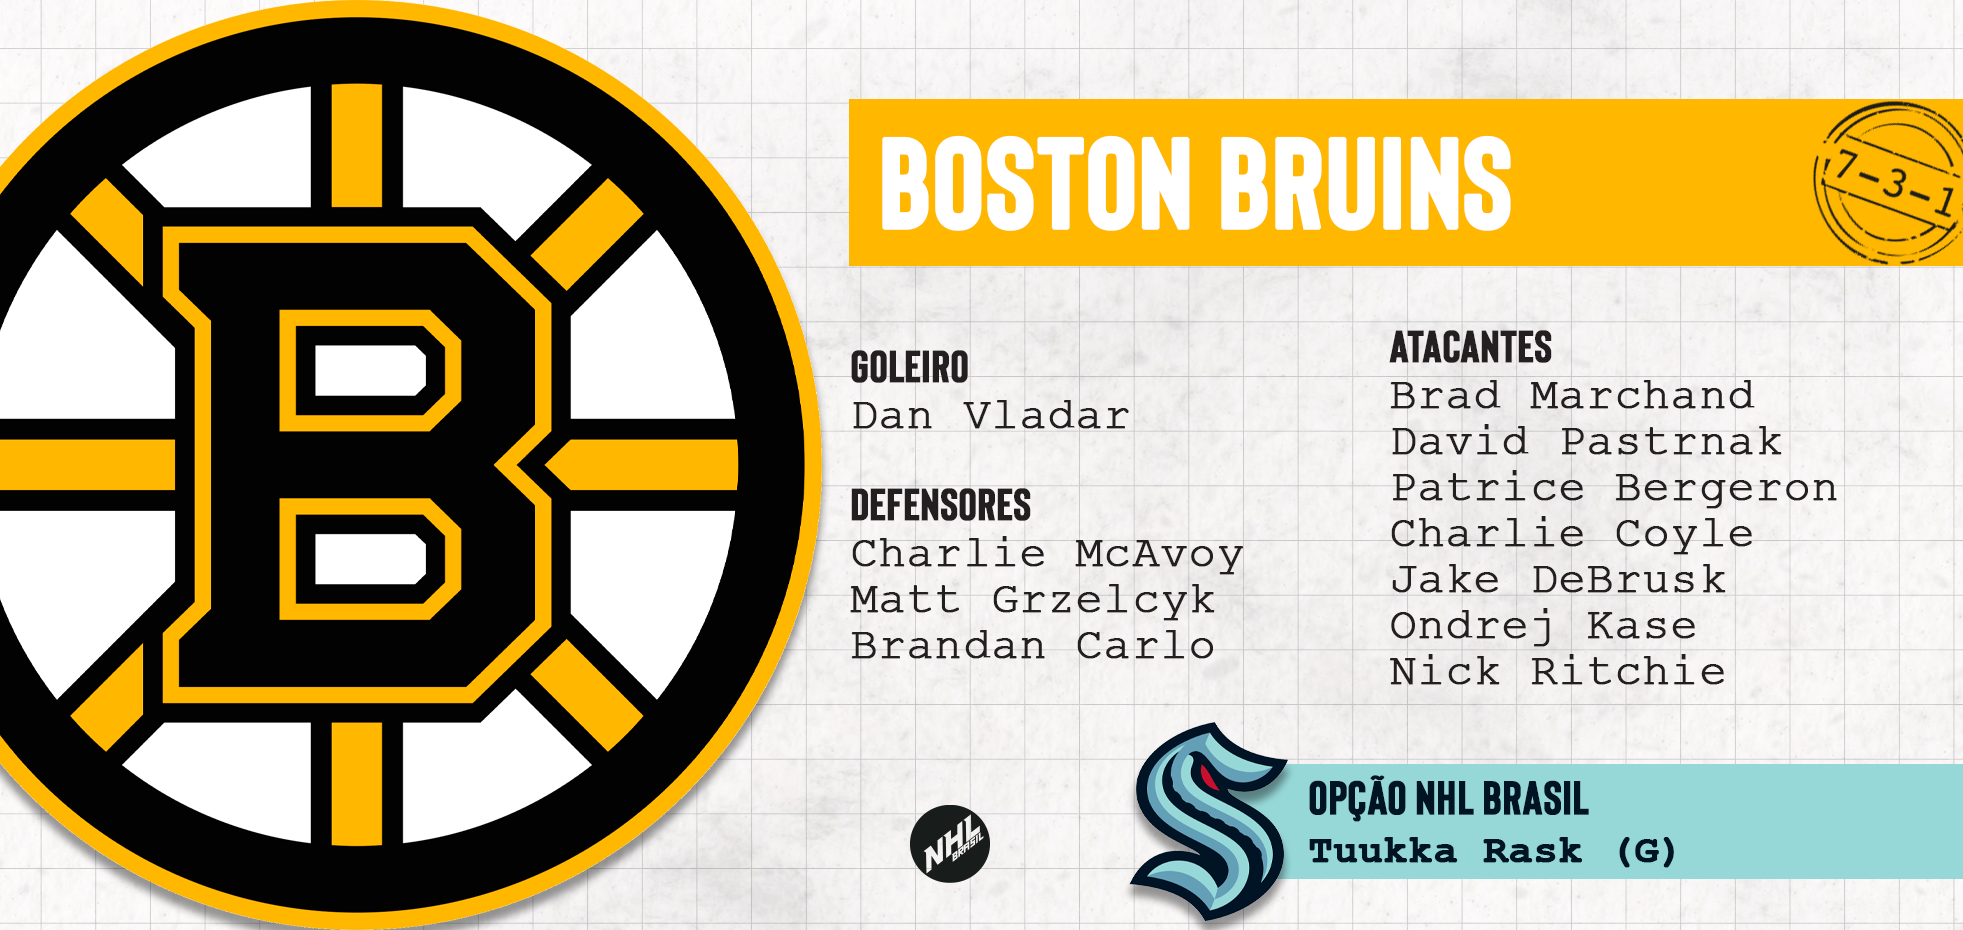 BOSTON BRUINS - lista de jogadores protegidos na Divisão Atlântica da NHL